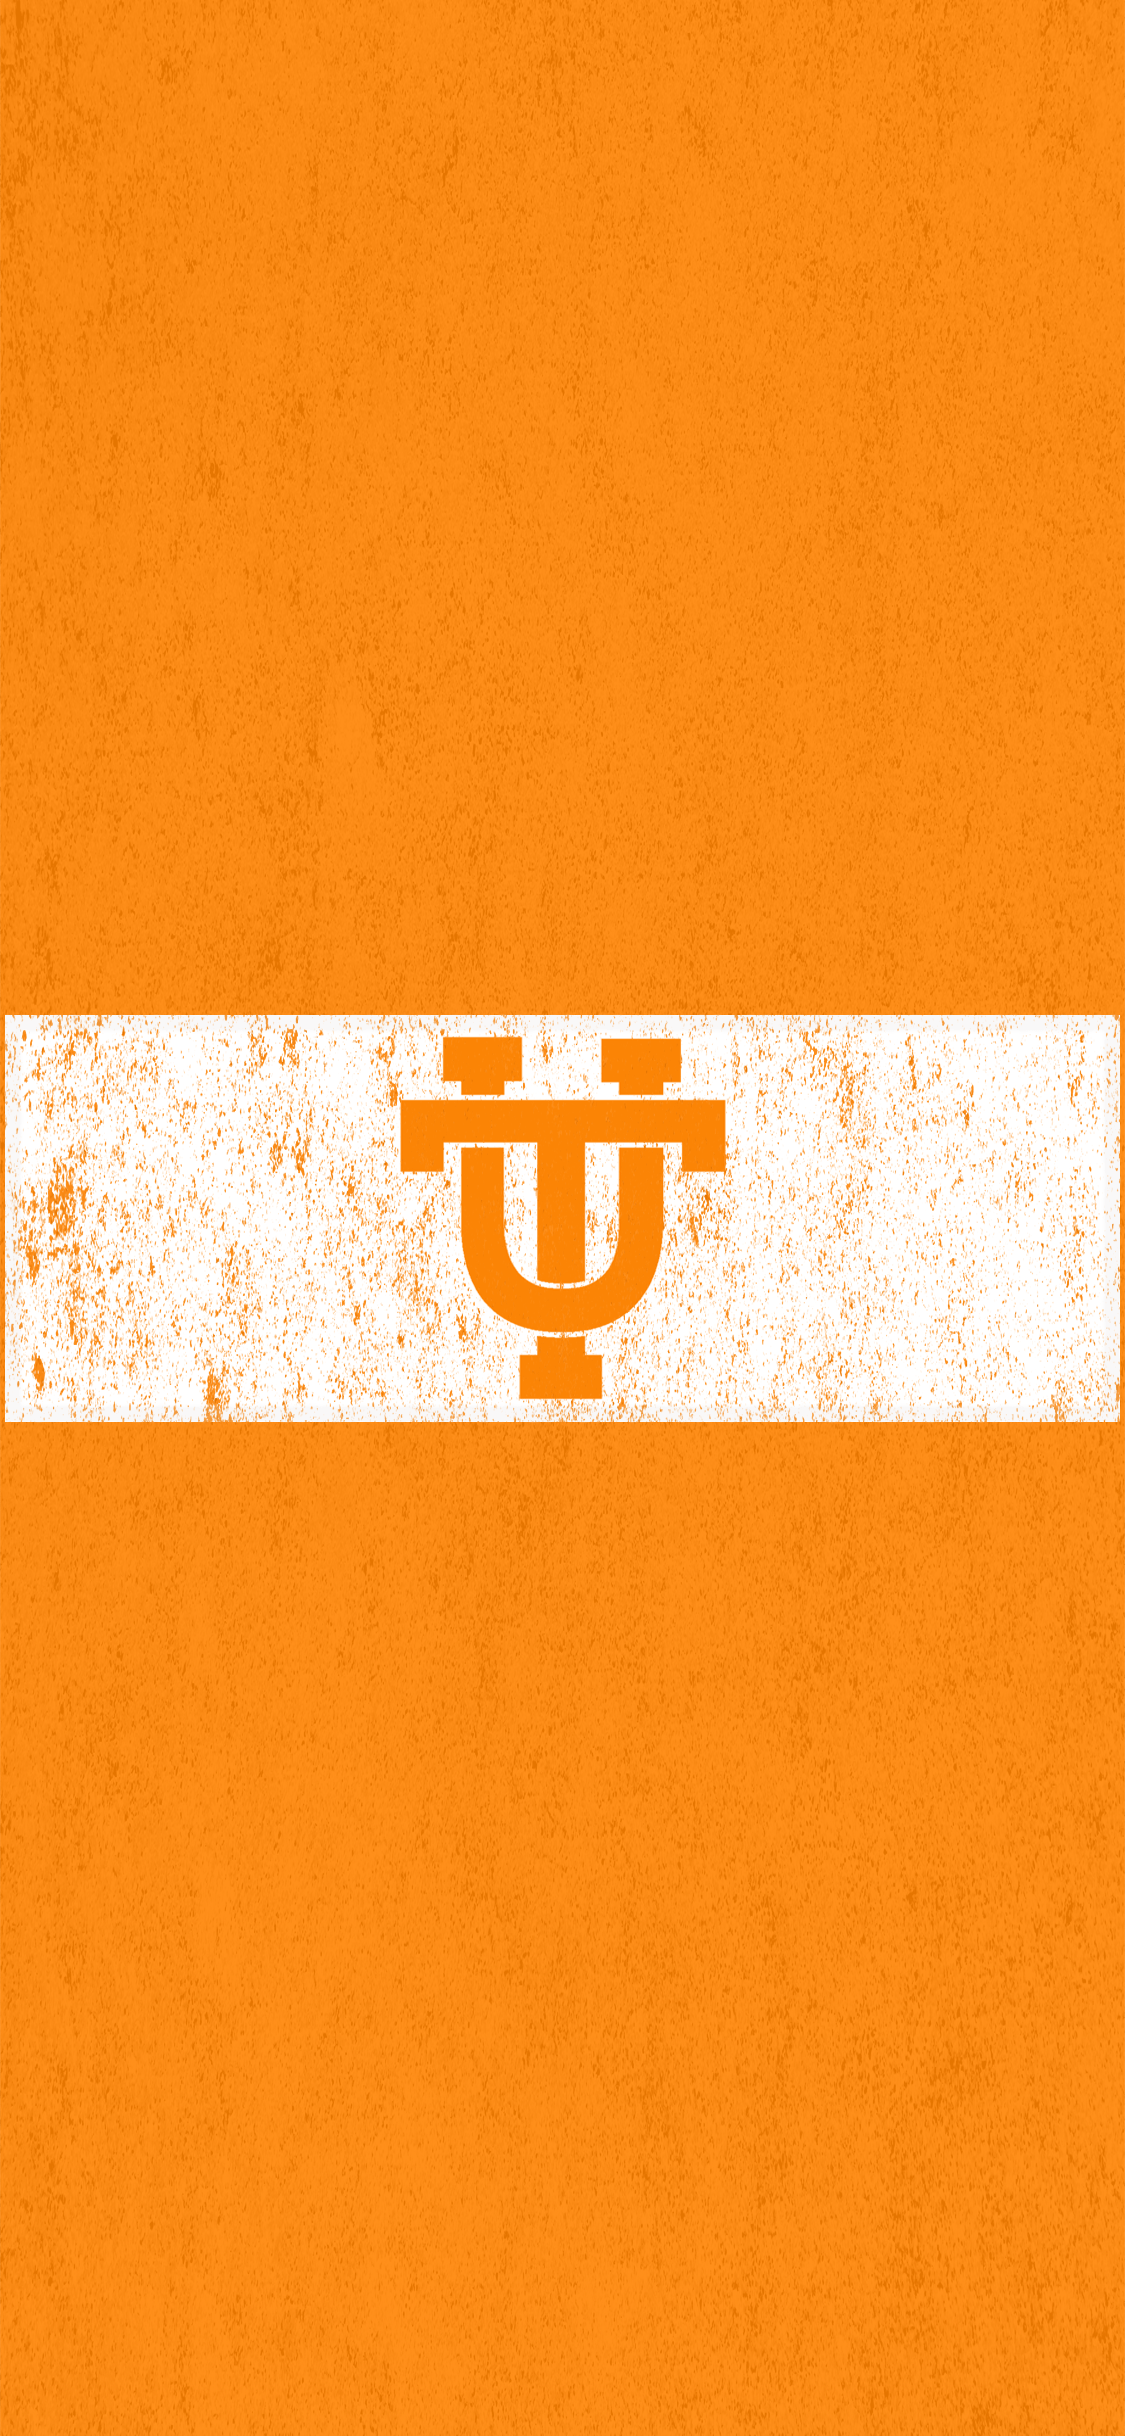 Hình nền Đại học Tennessee: Cảm nhận sự thanh lịch và đặc trưng của Đại học Tennessee qua những hình nền độc đáo. Với màu sắc tươi sáng và nền tảng thiết kế chuyên nghiệp, hình nền sẽ mang đến cho bạn một trải nghiệm mới lạ về đẳng cấp và văn minh.